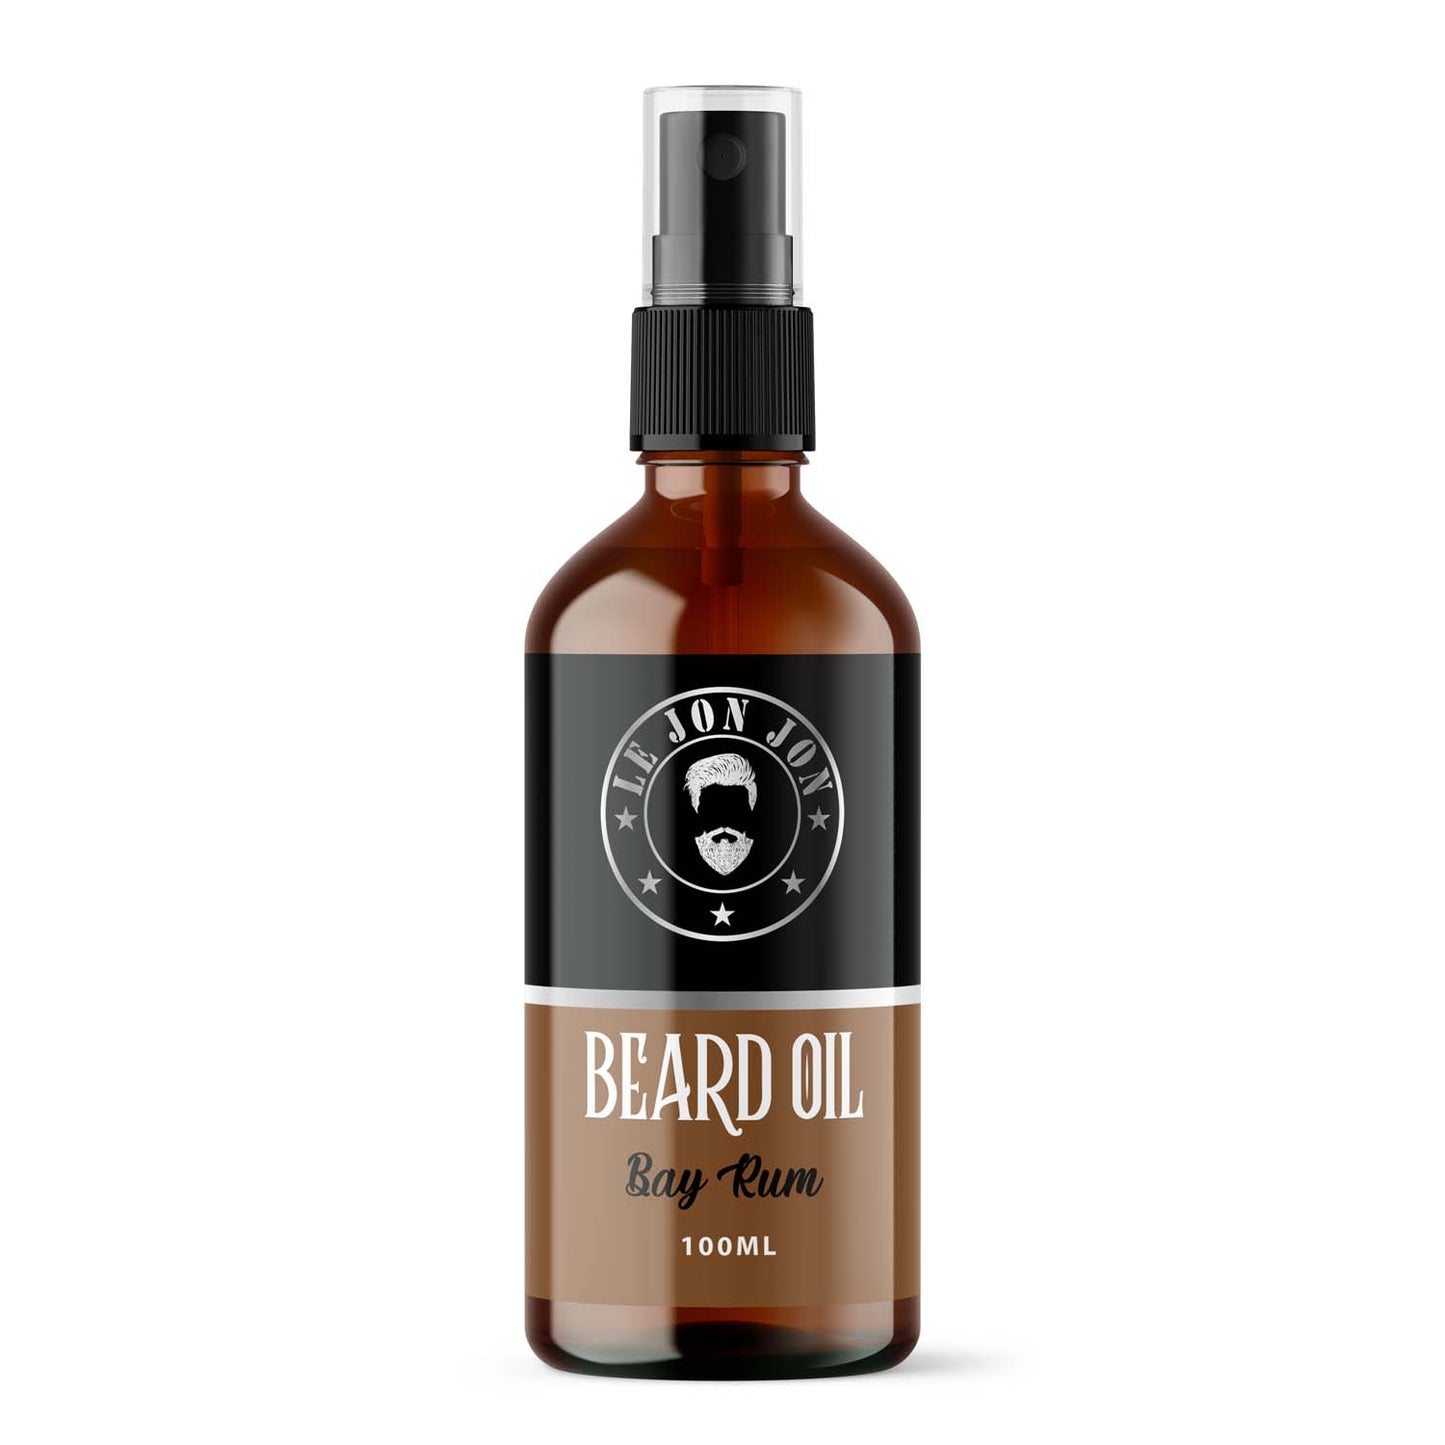 Bayrum 100ml bottle of beard oil